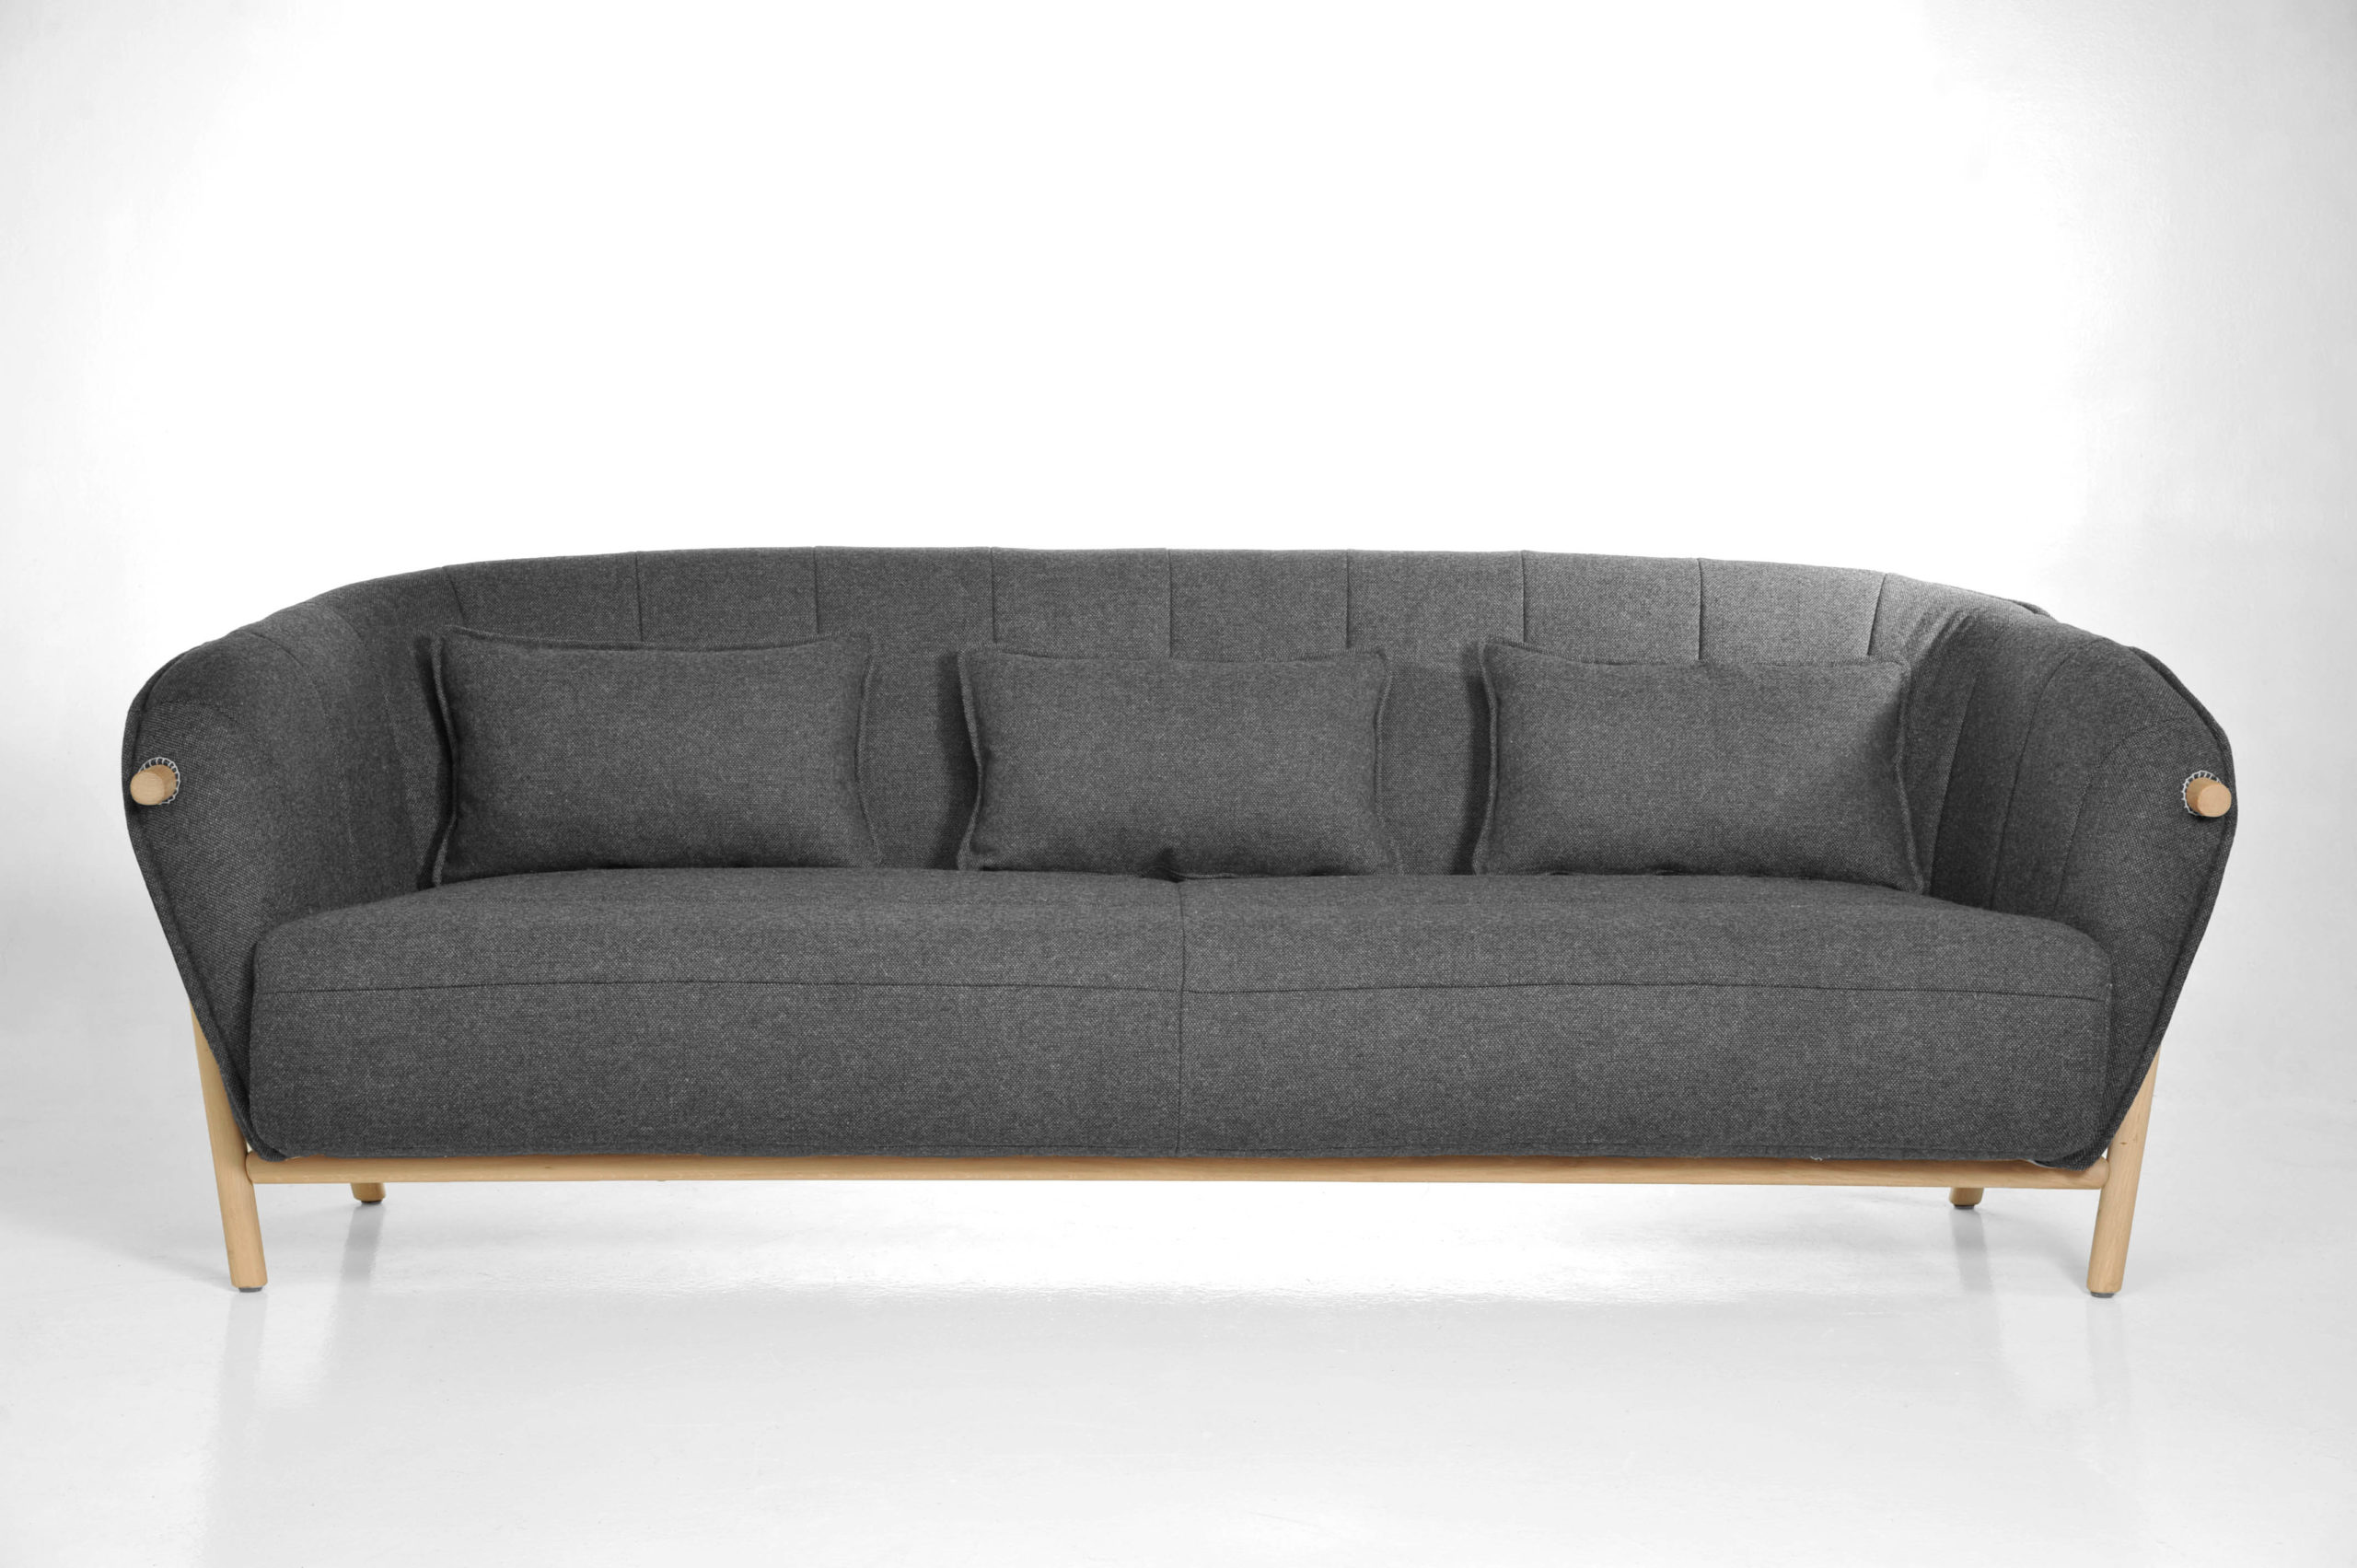 Canapés - sofas